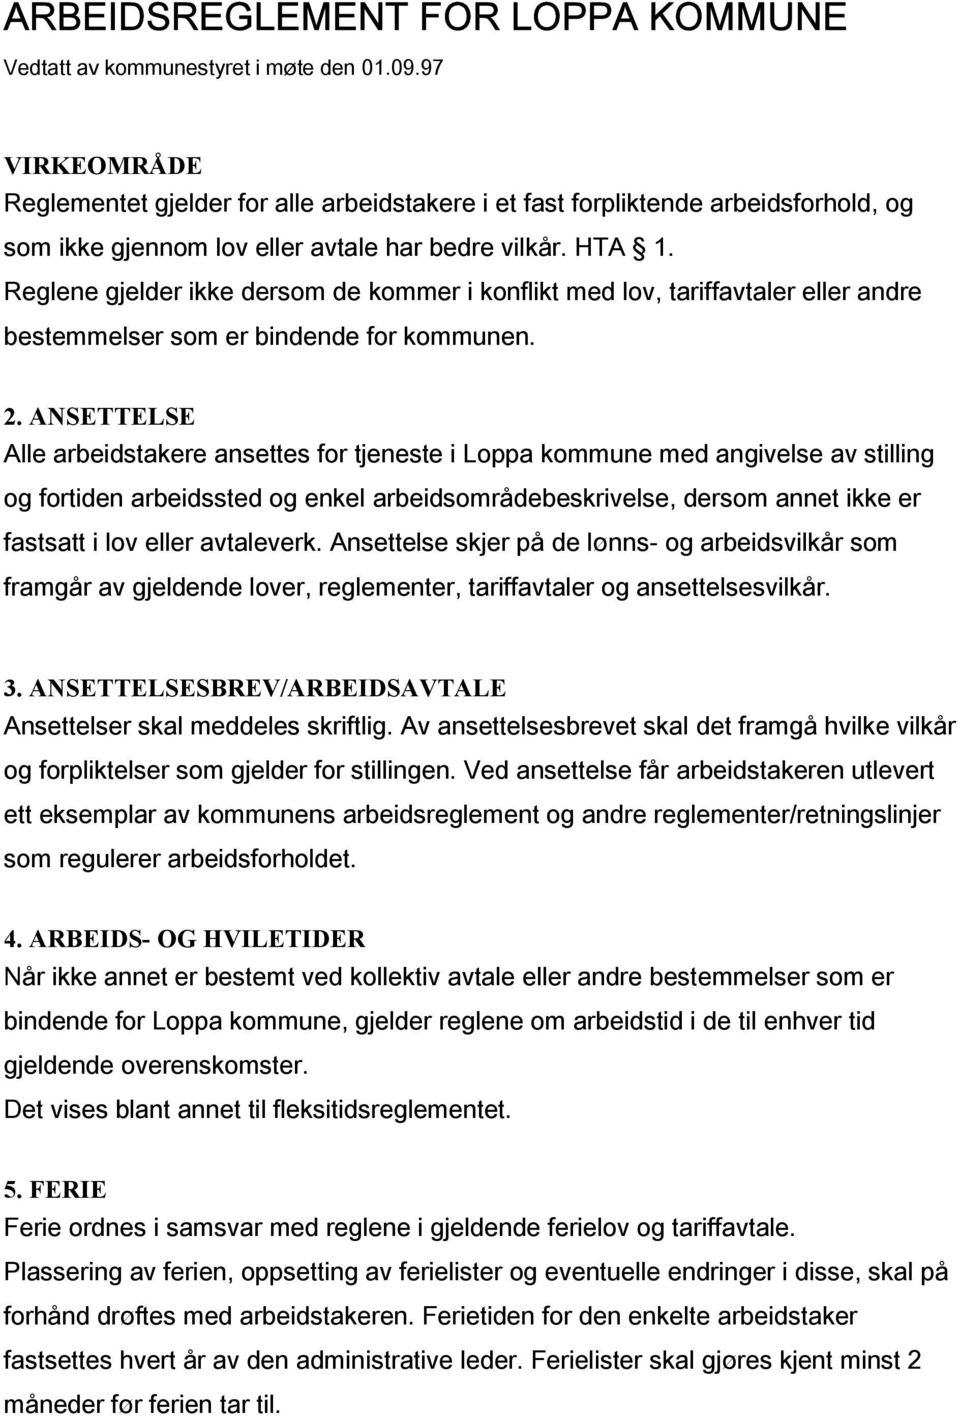 ARBEIDSREGLEMENT FOR LOPPA KOMMUNE - PDF Gratis nedlasting